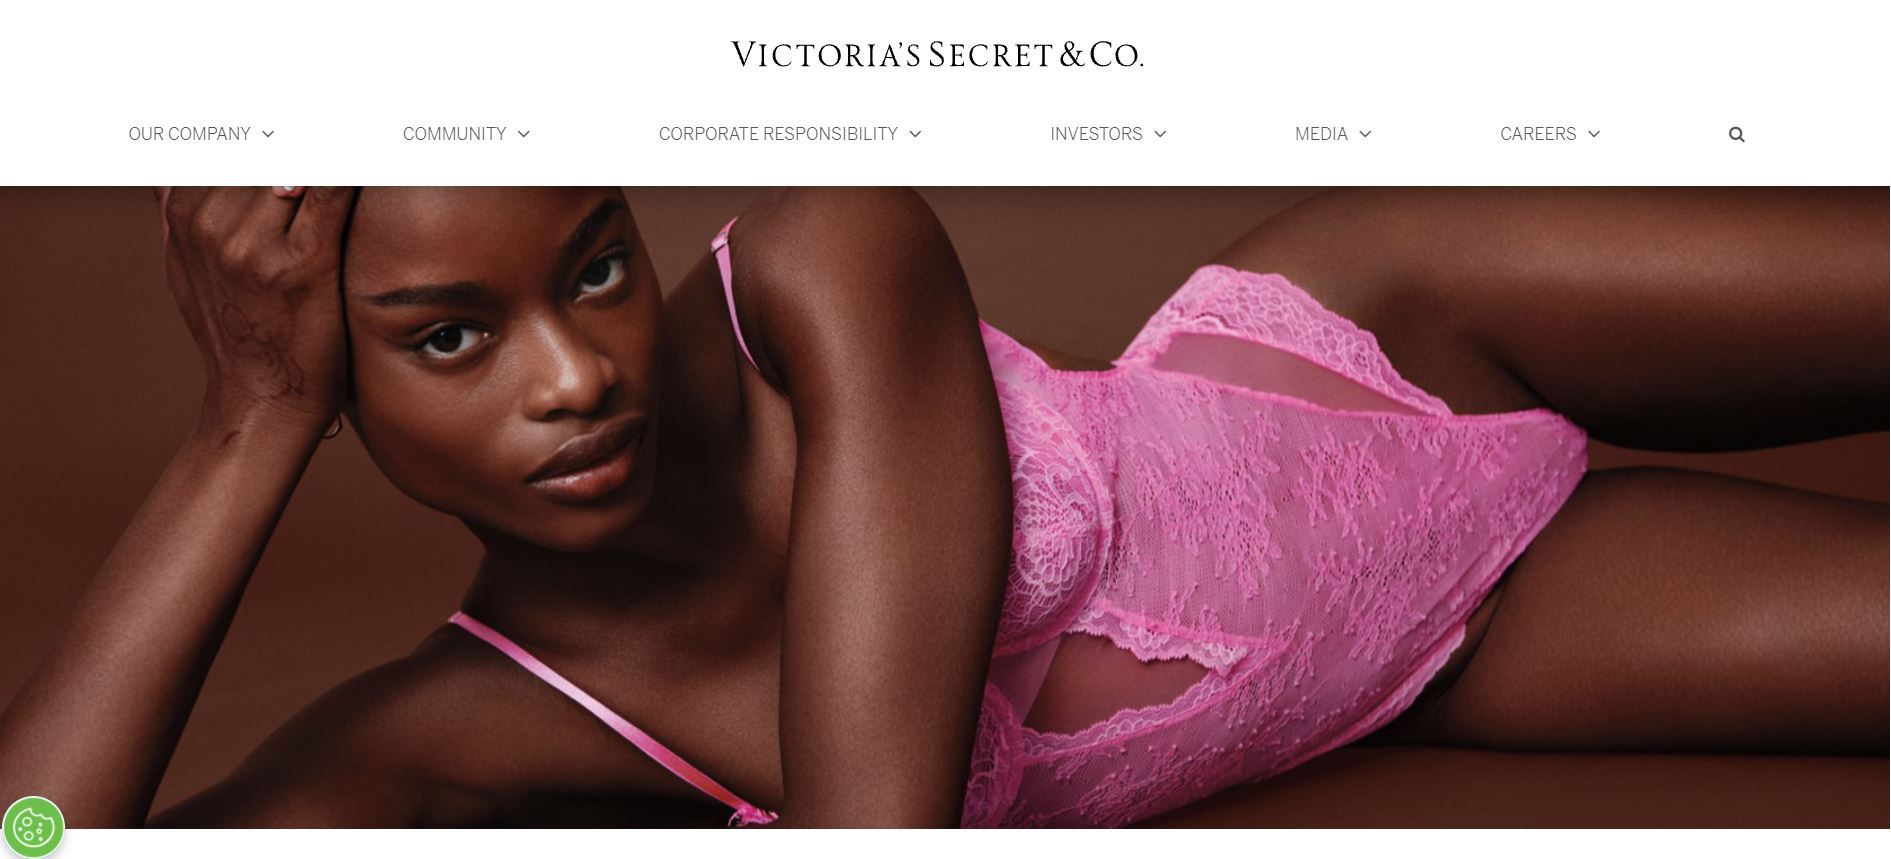 Victoria's Secret Expands with